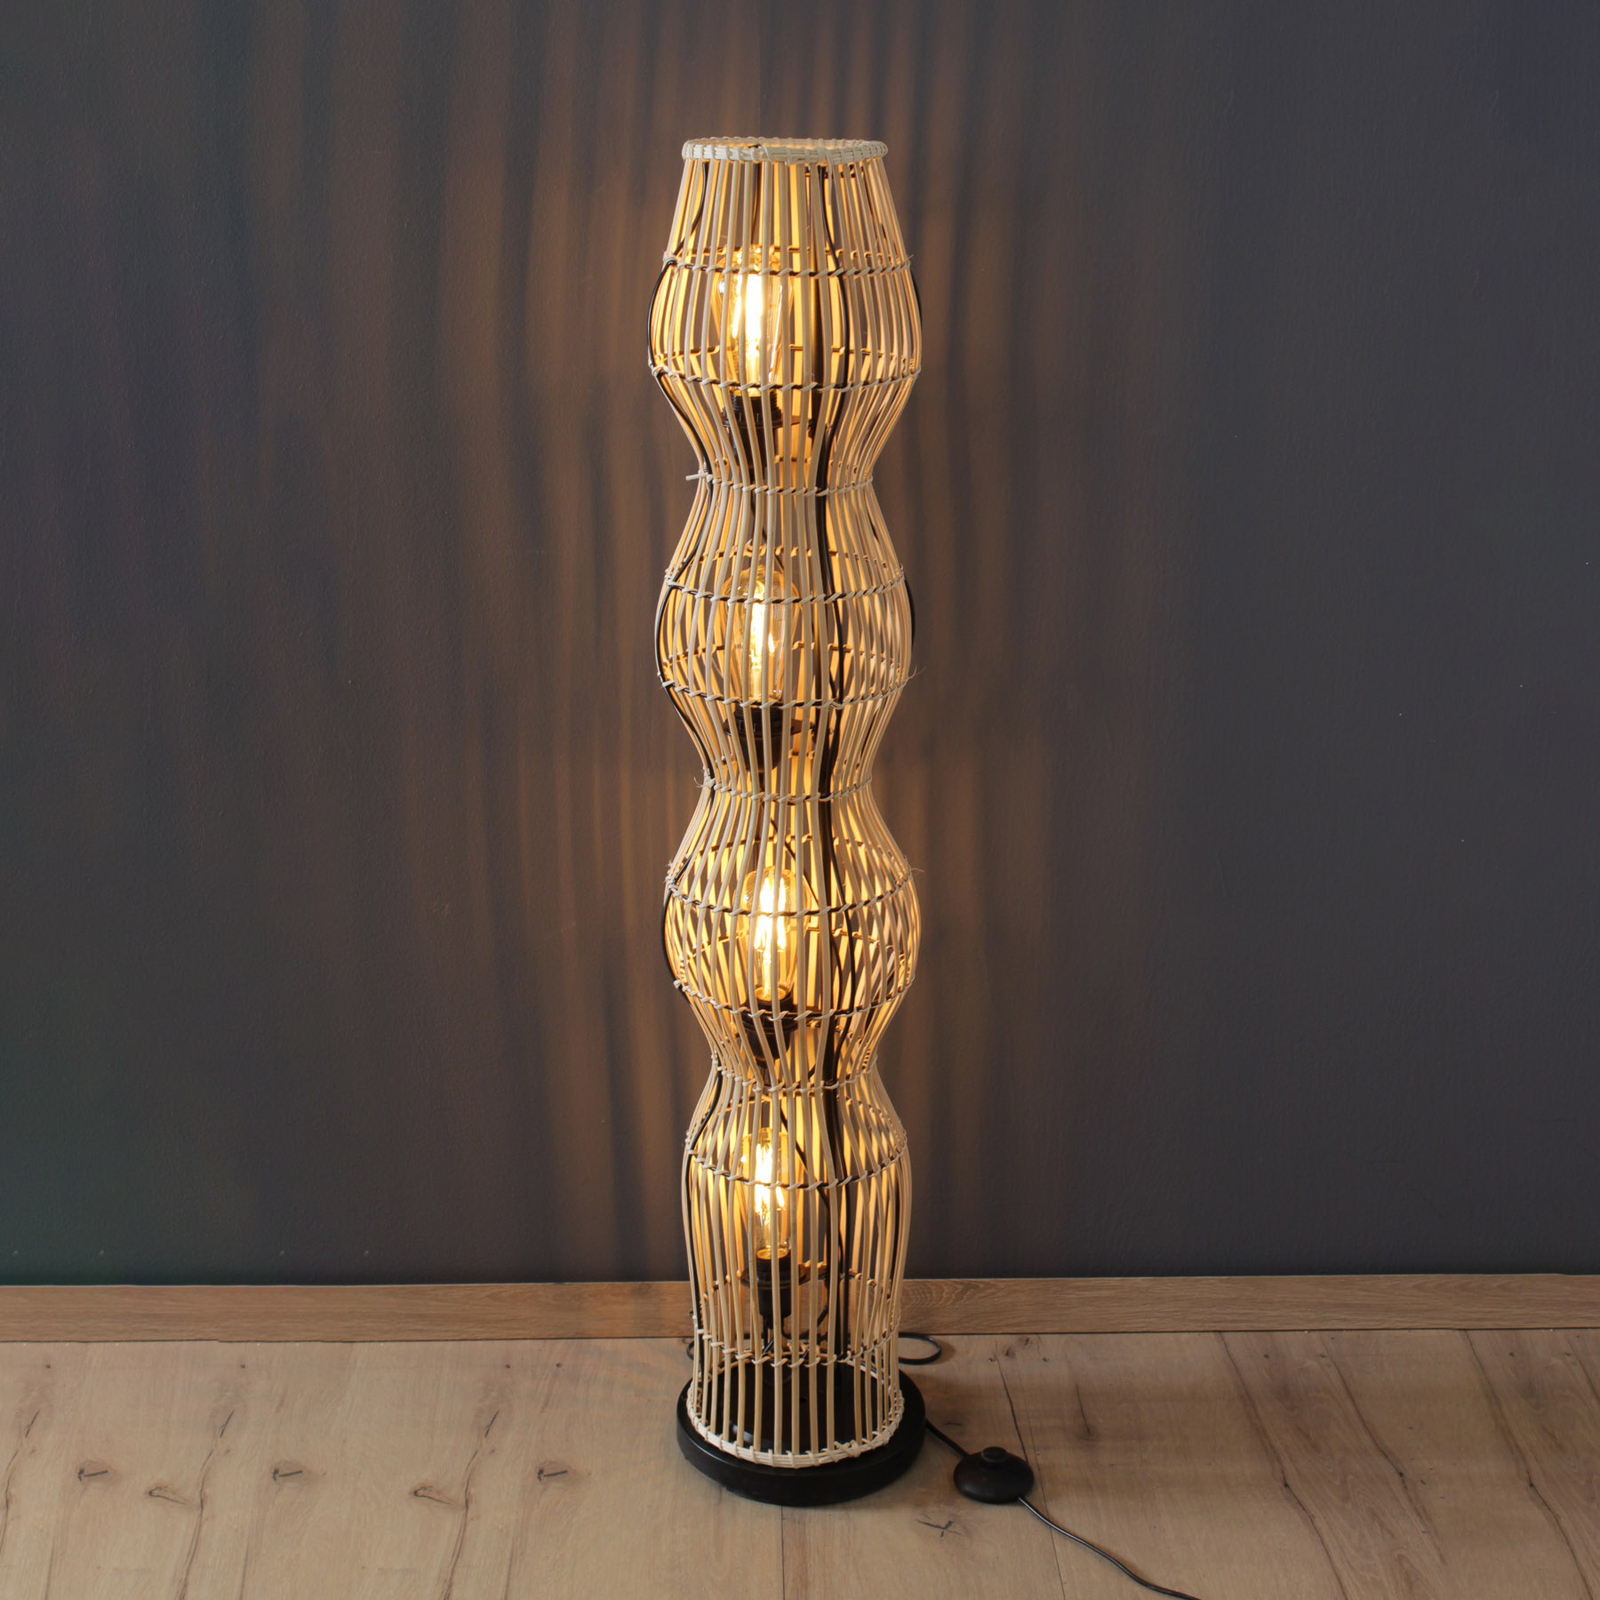 Lampe sur pied Bamboo, naturel